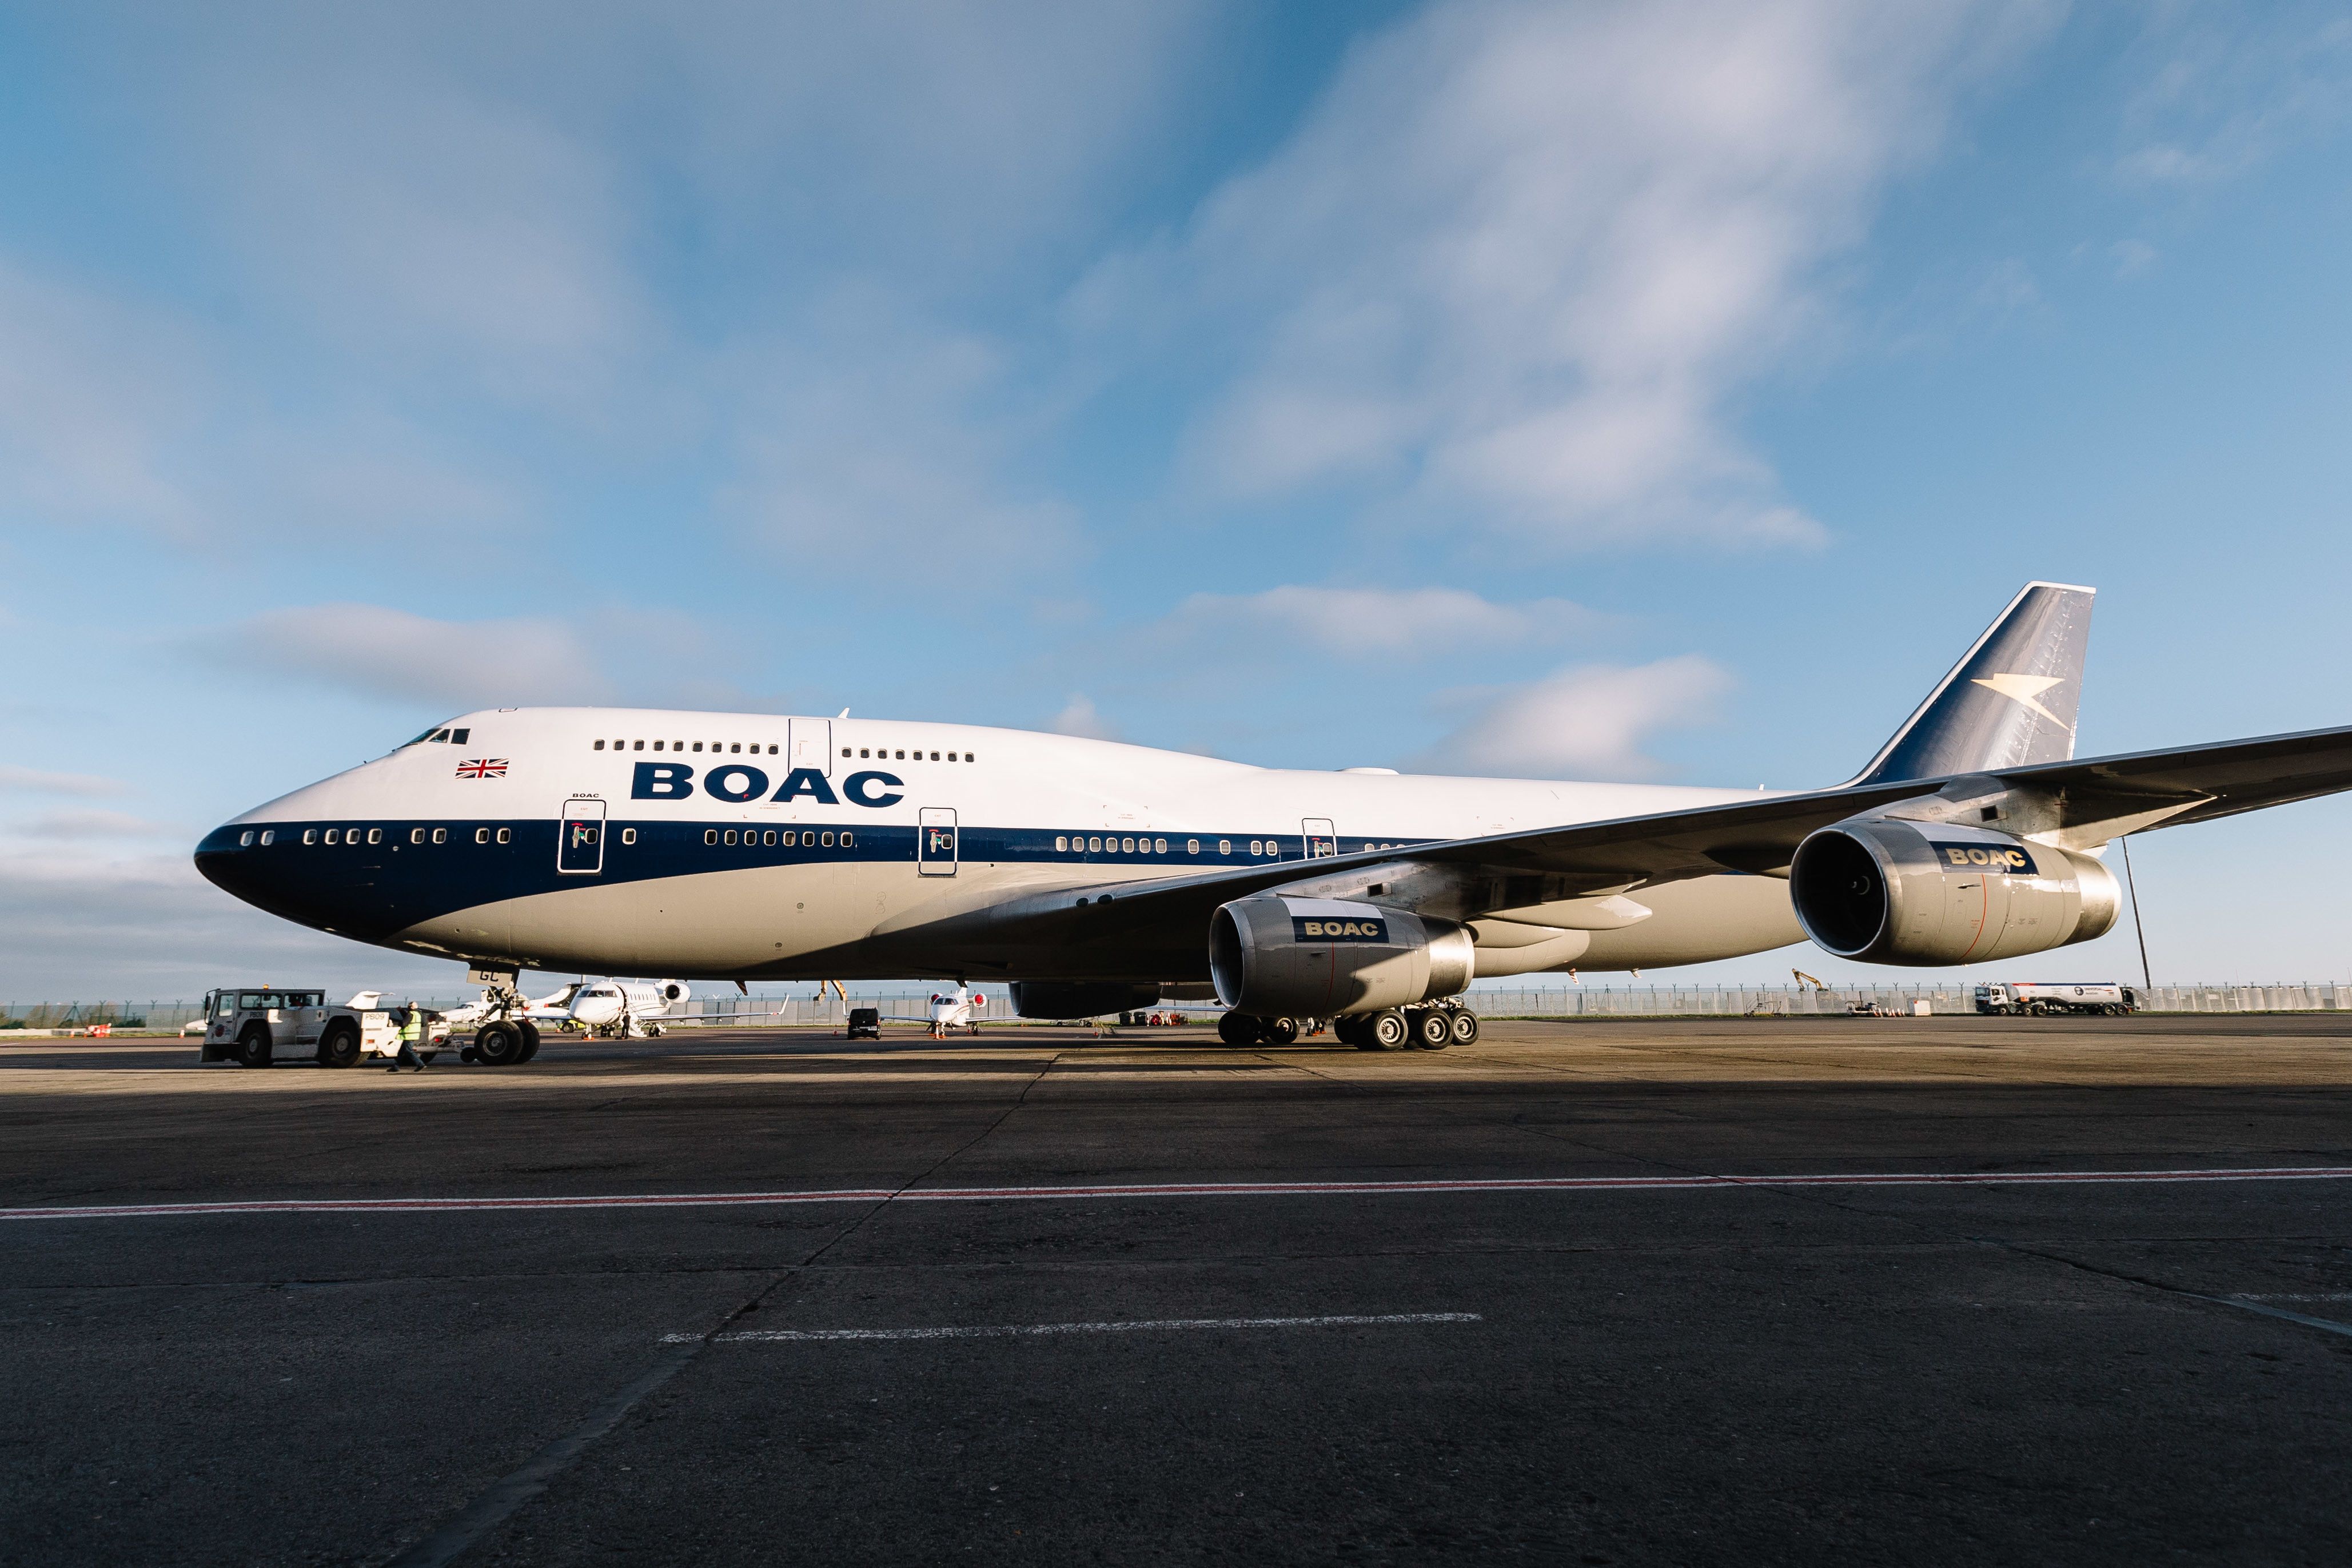 British Airways Boeing 747 in retro BOAC livery